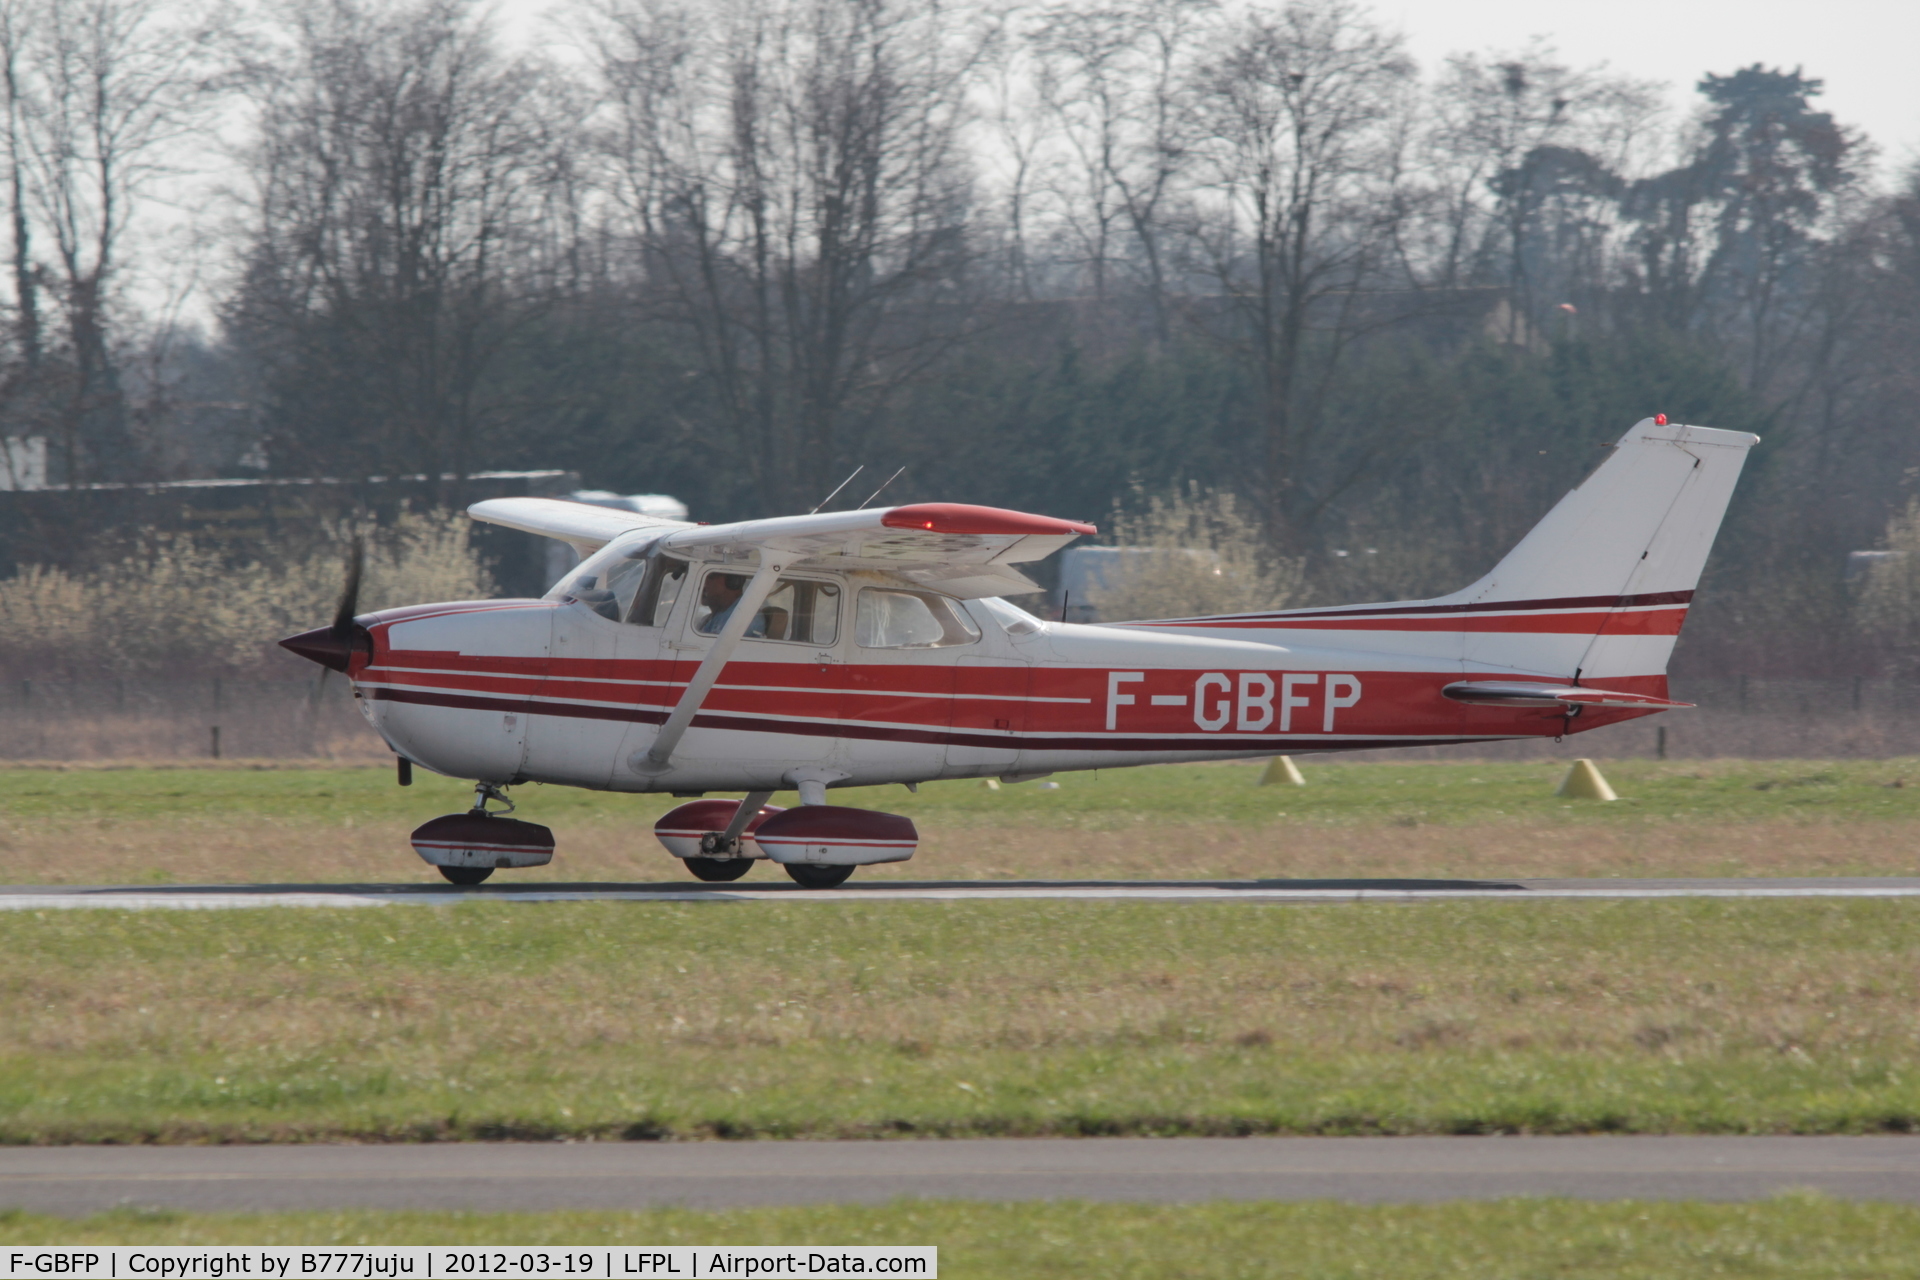 F-GBFP, Reims F172N Skyhawk C/N 1720, on landing at Lognes